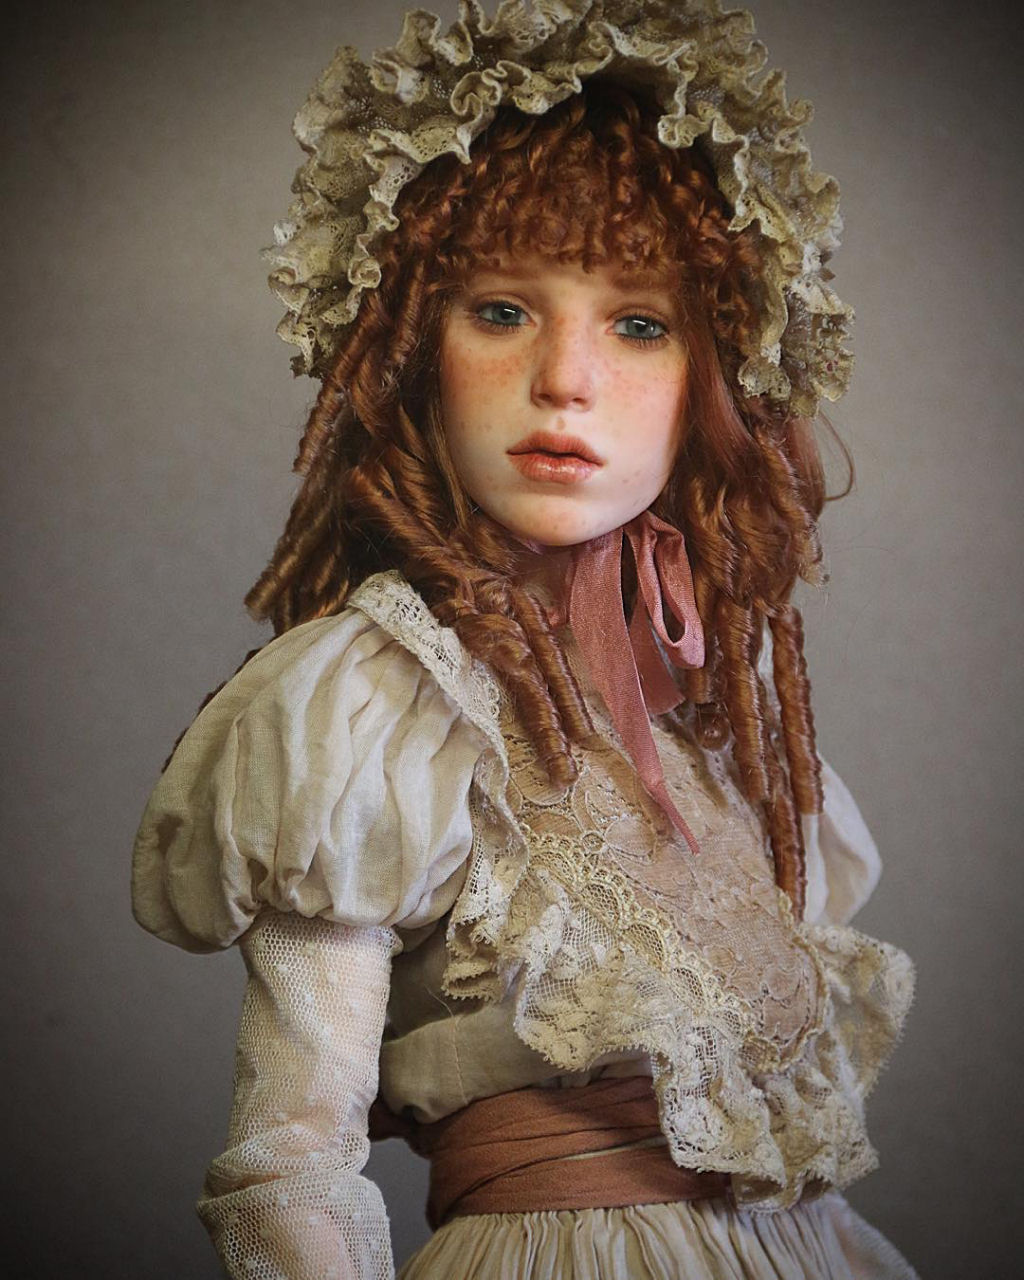 Artista russo cria bonecas com faces incrivelmente realistas 05